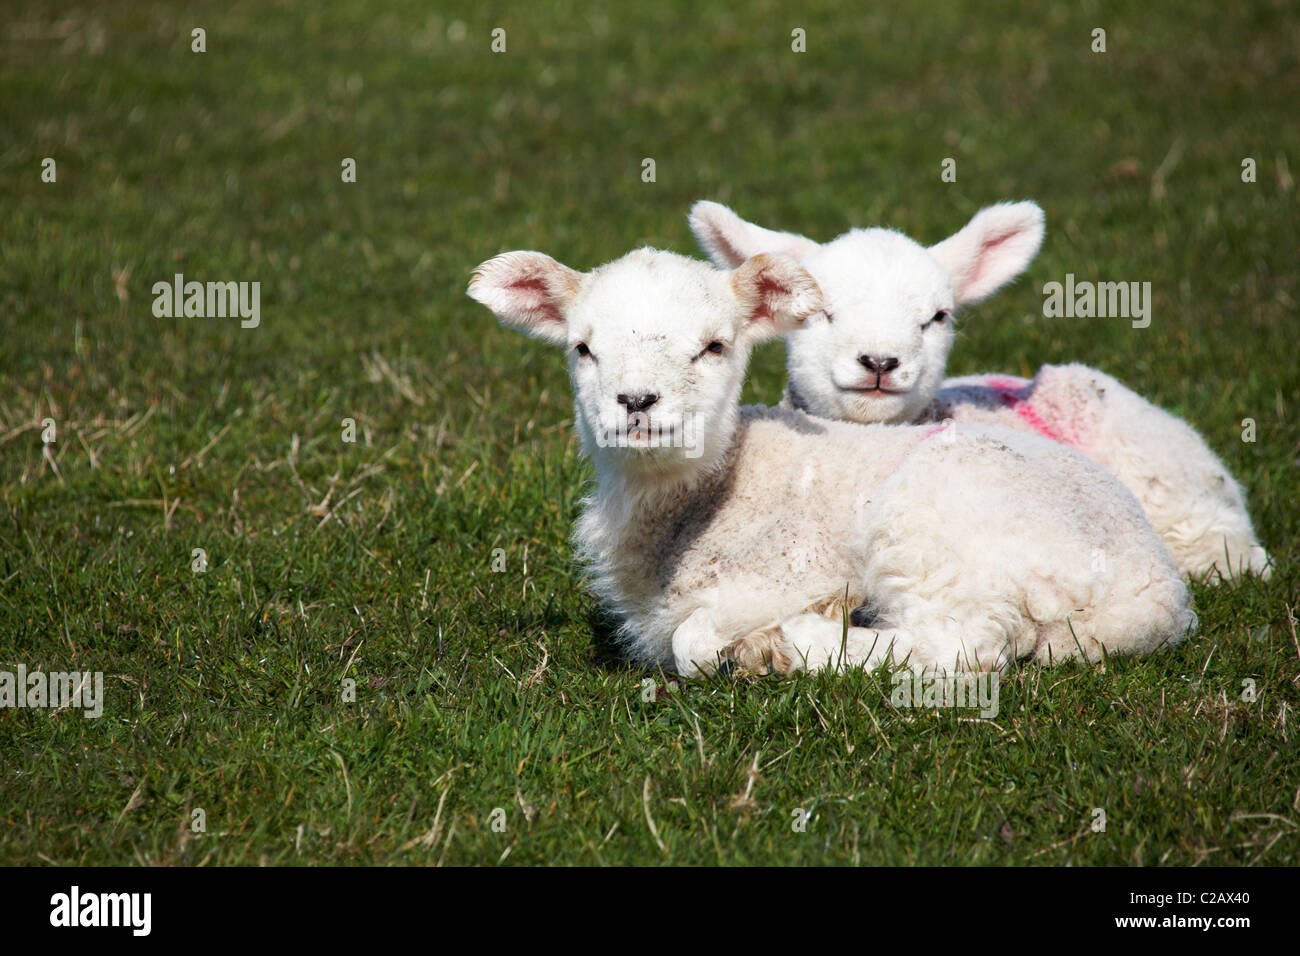 Par de corderos jóvenes mirando al fotógrafo en Lundy Island, Devon, Inglaterra en marzo Foto de stock